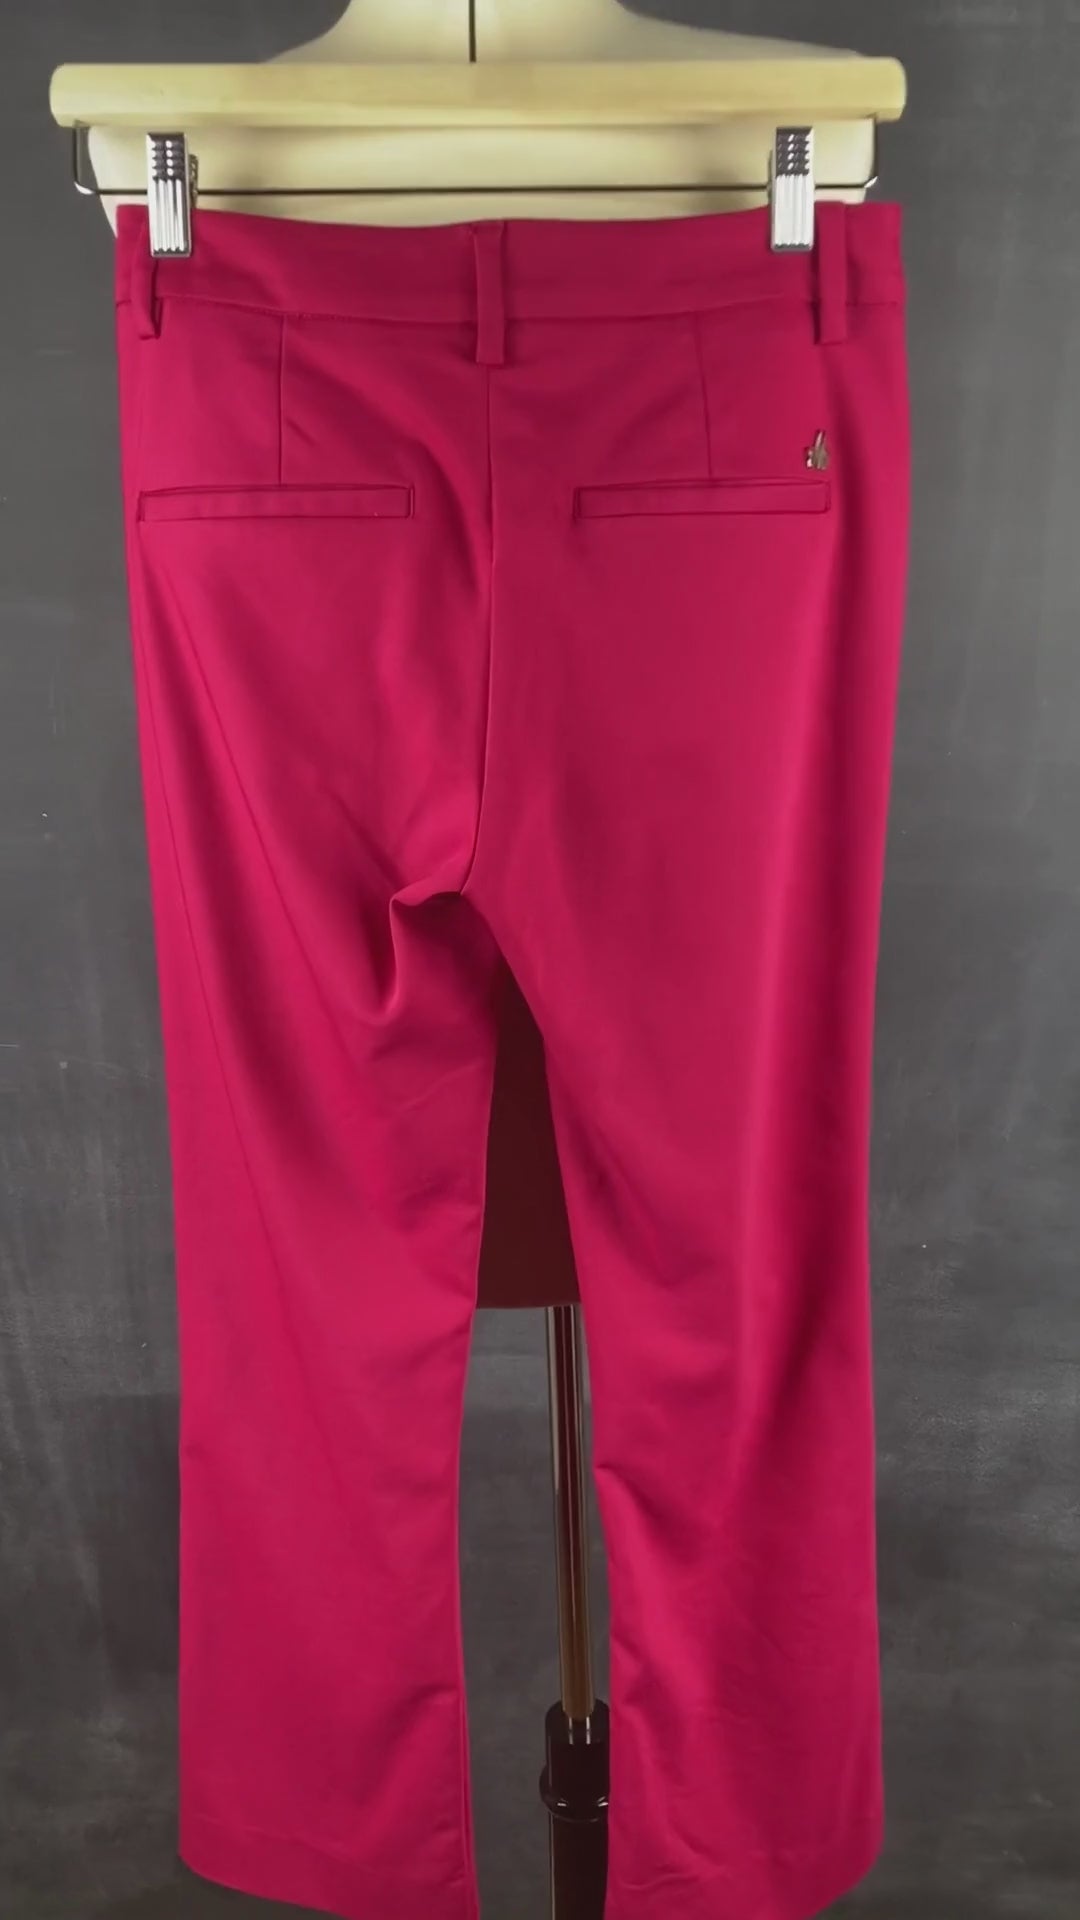 Pantalon écourté rose cerise Mos Mosh, taille 34 (européen - 25-xs). Vue de la vidéo qui présente tous les détails du pantalon.